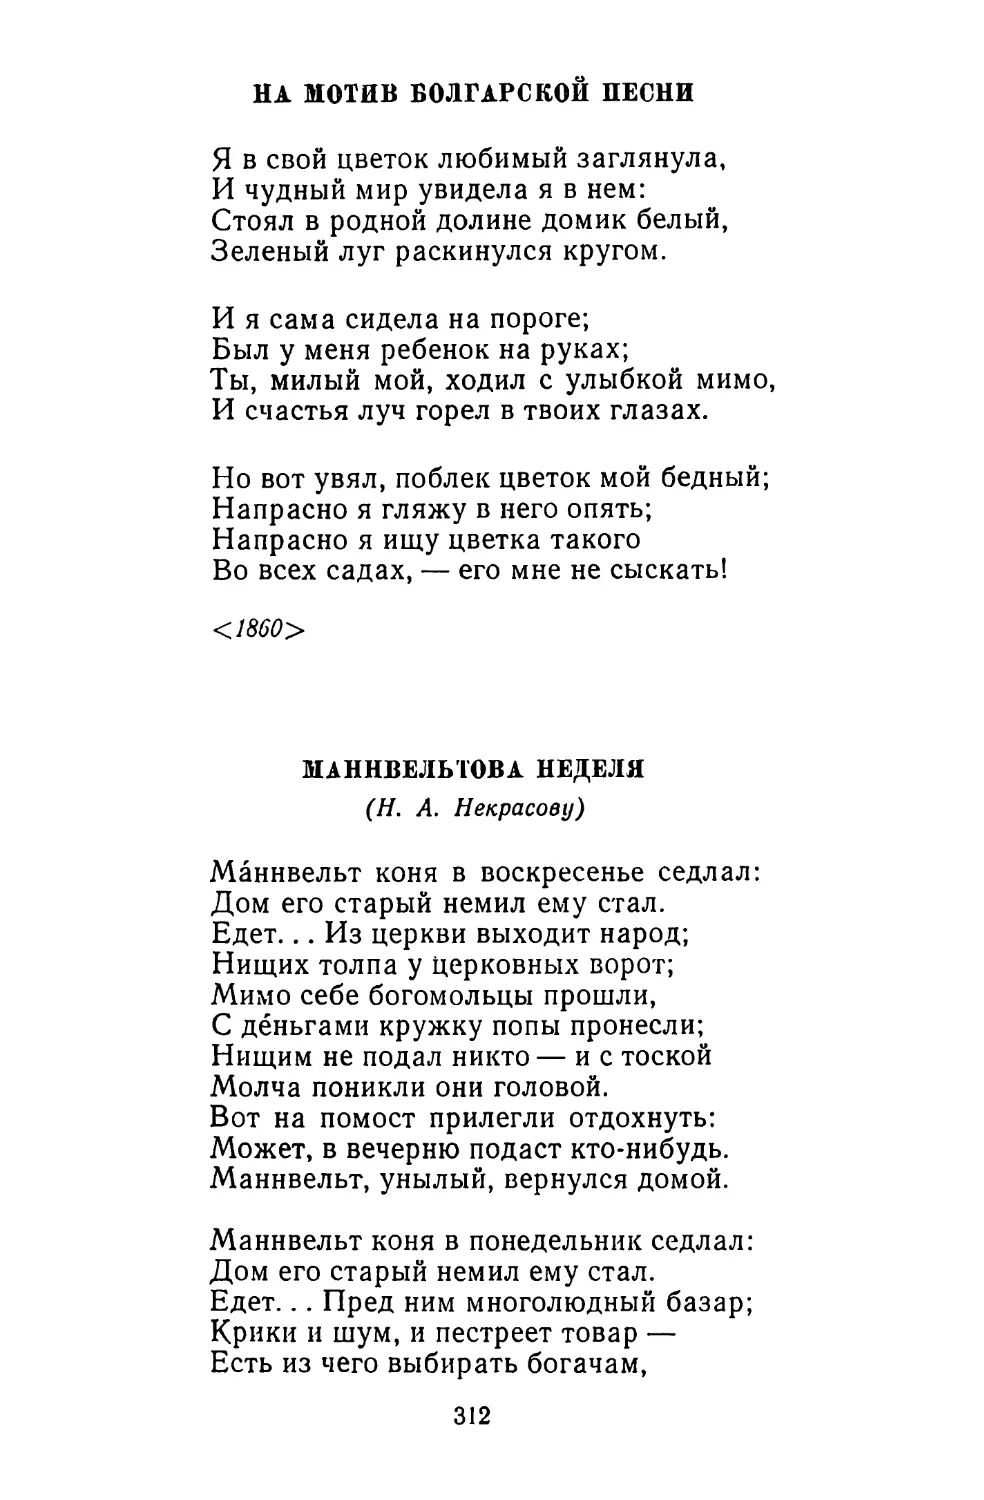 На мотив болгарской песни
Маннвельтова неделя